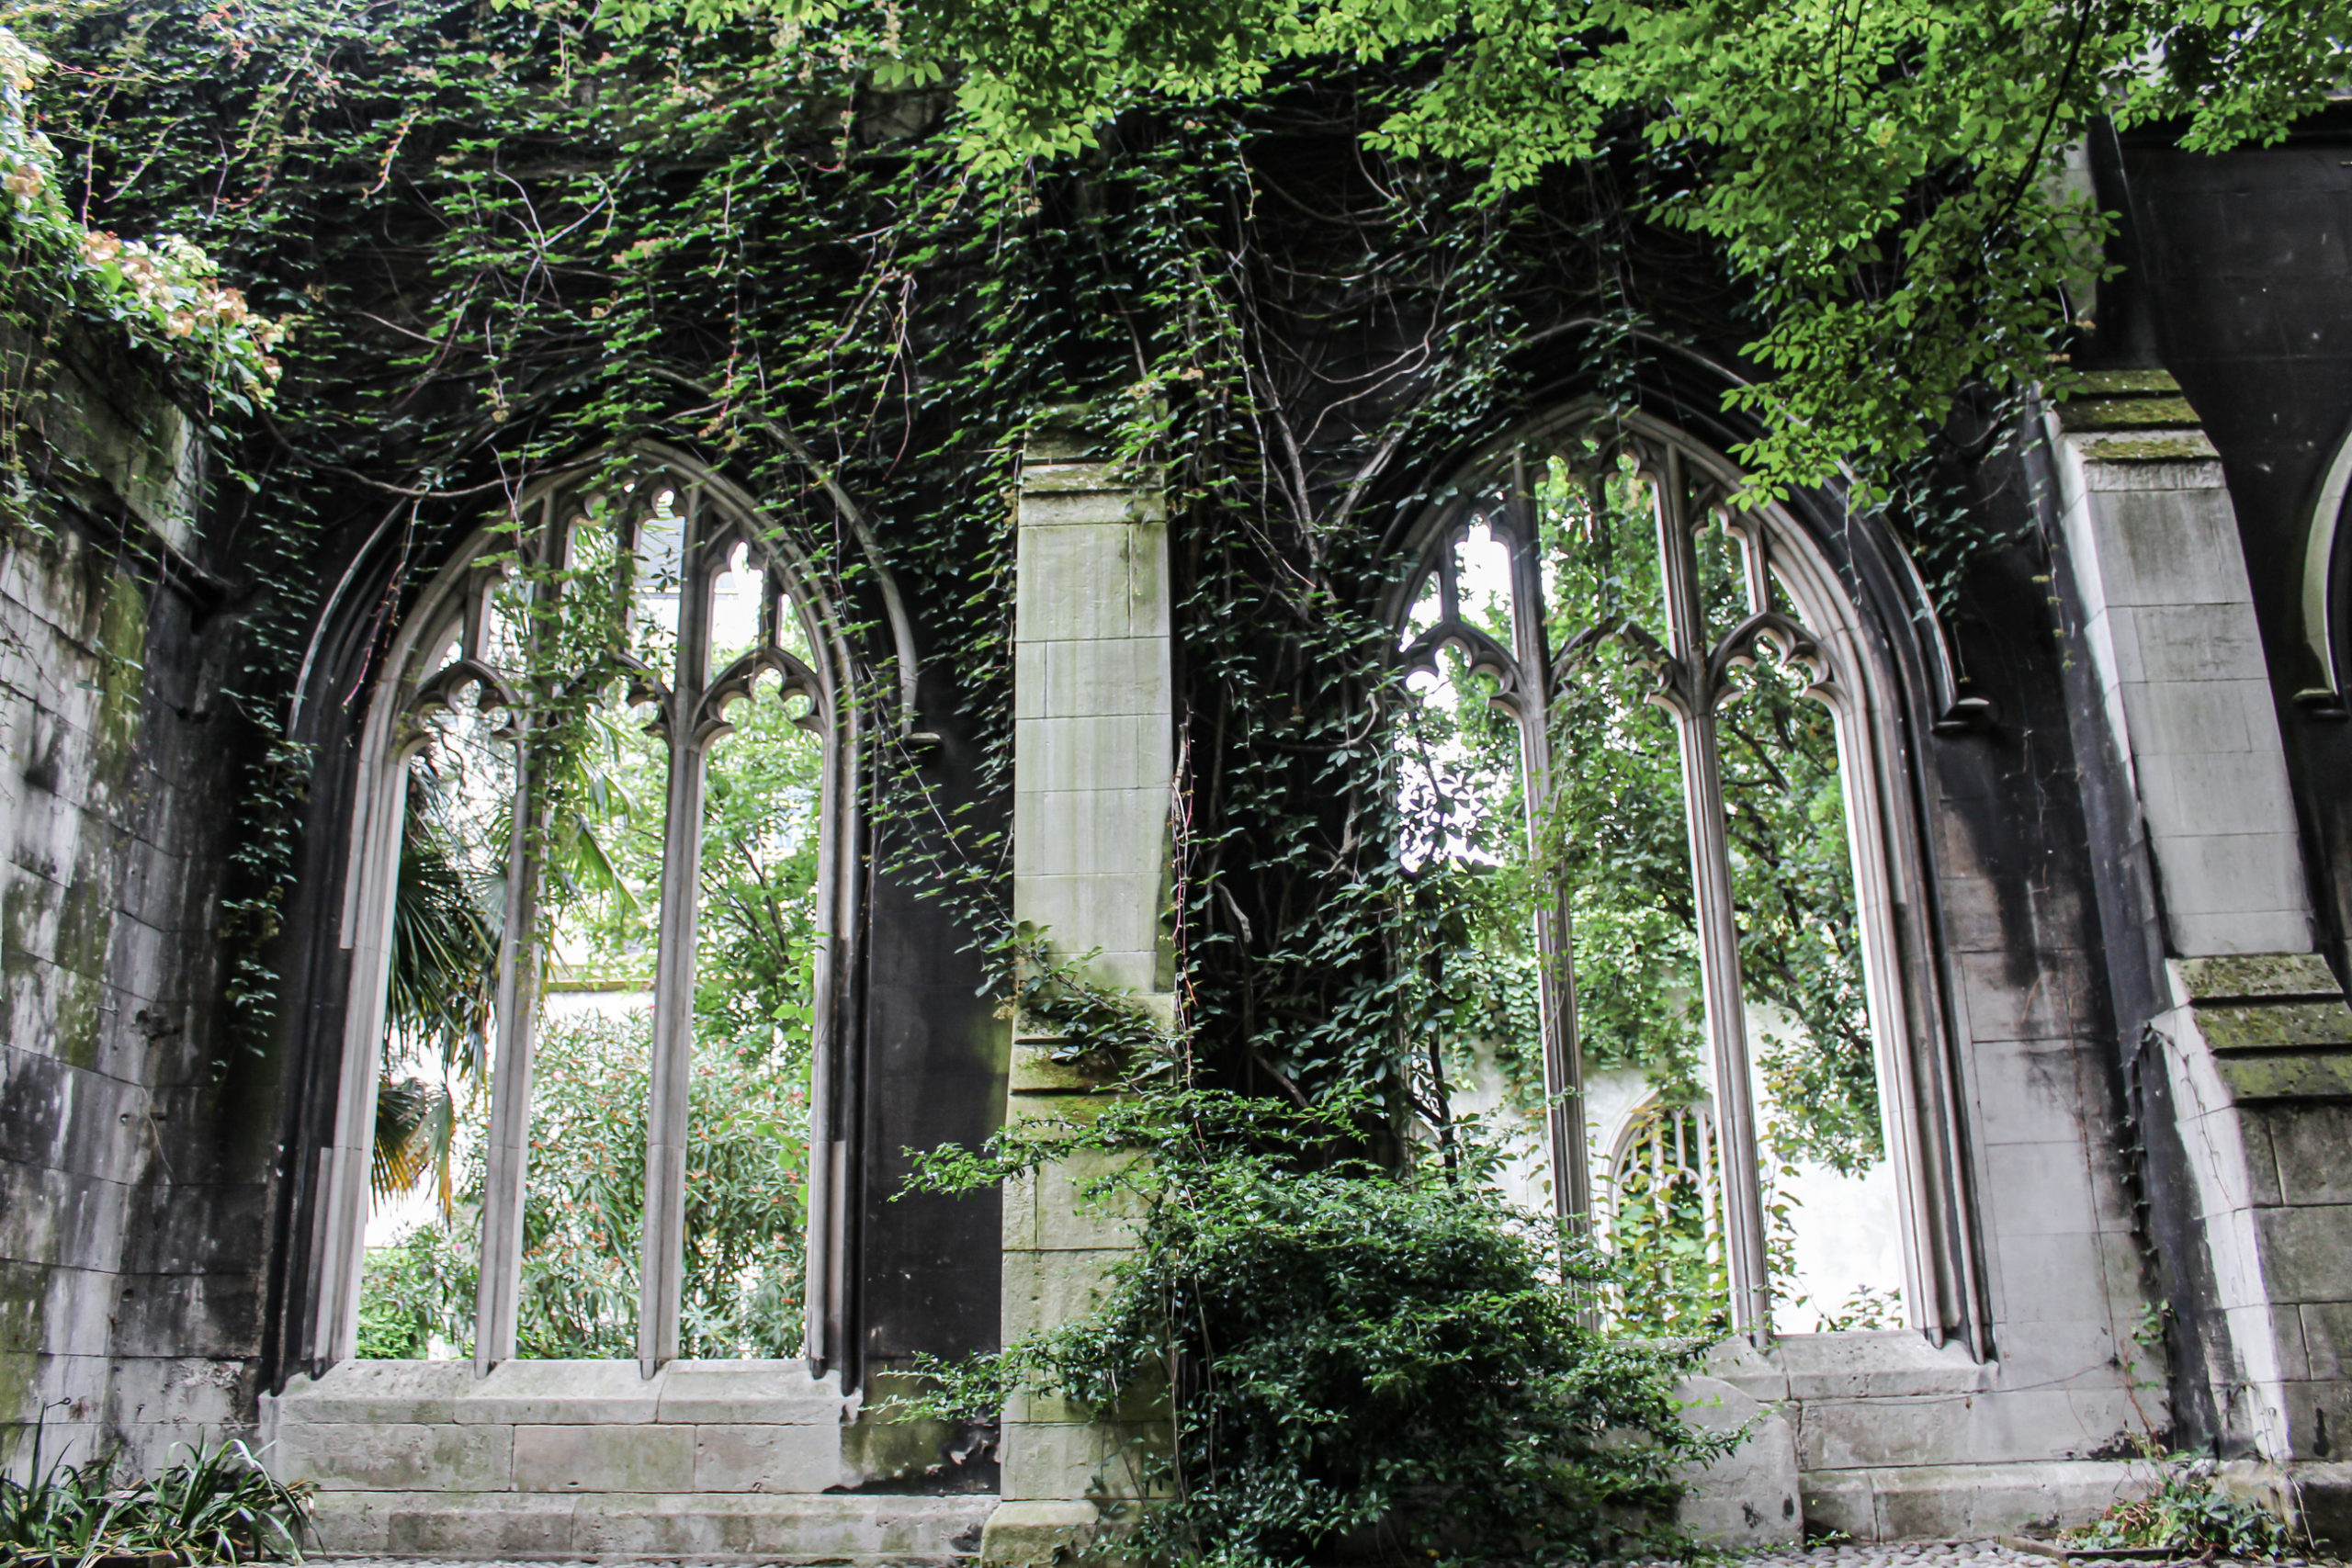 St Dunstan-in-the-East - London's Hidden Garden • West Coast Calli